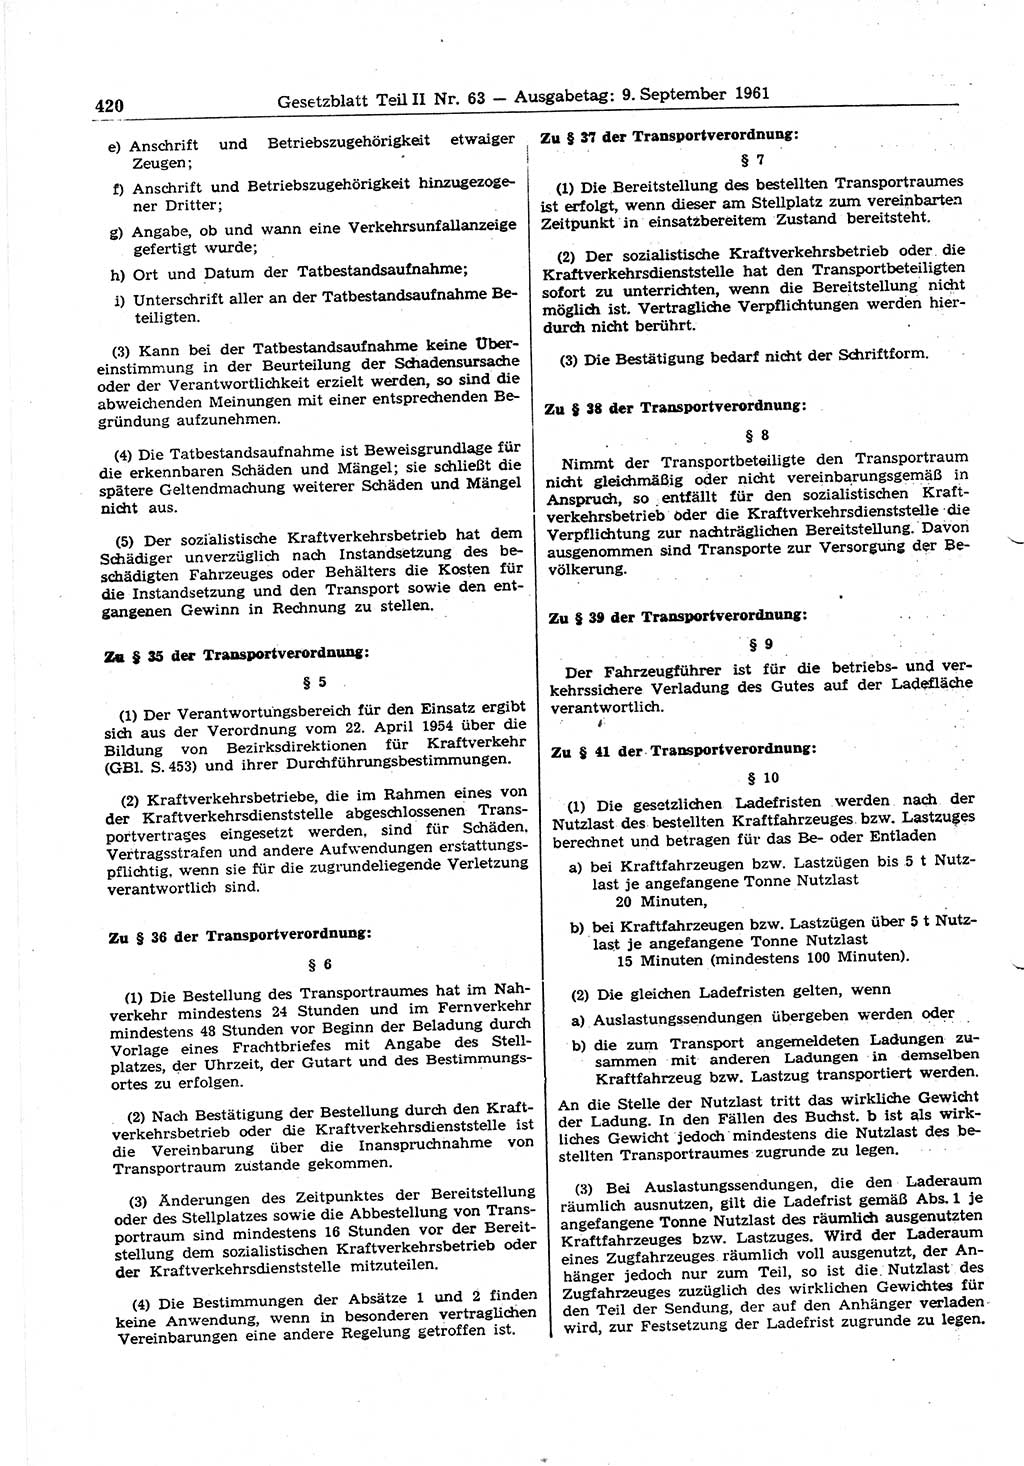 Gesetzblatt (GBl.) der Deutschen Demokratischen Republik (DDR) Teil ⅠⅠ 1961, Seite 420 (GBl. DDR ⅠⅠ 1961, S. 420)